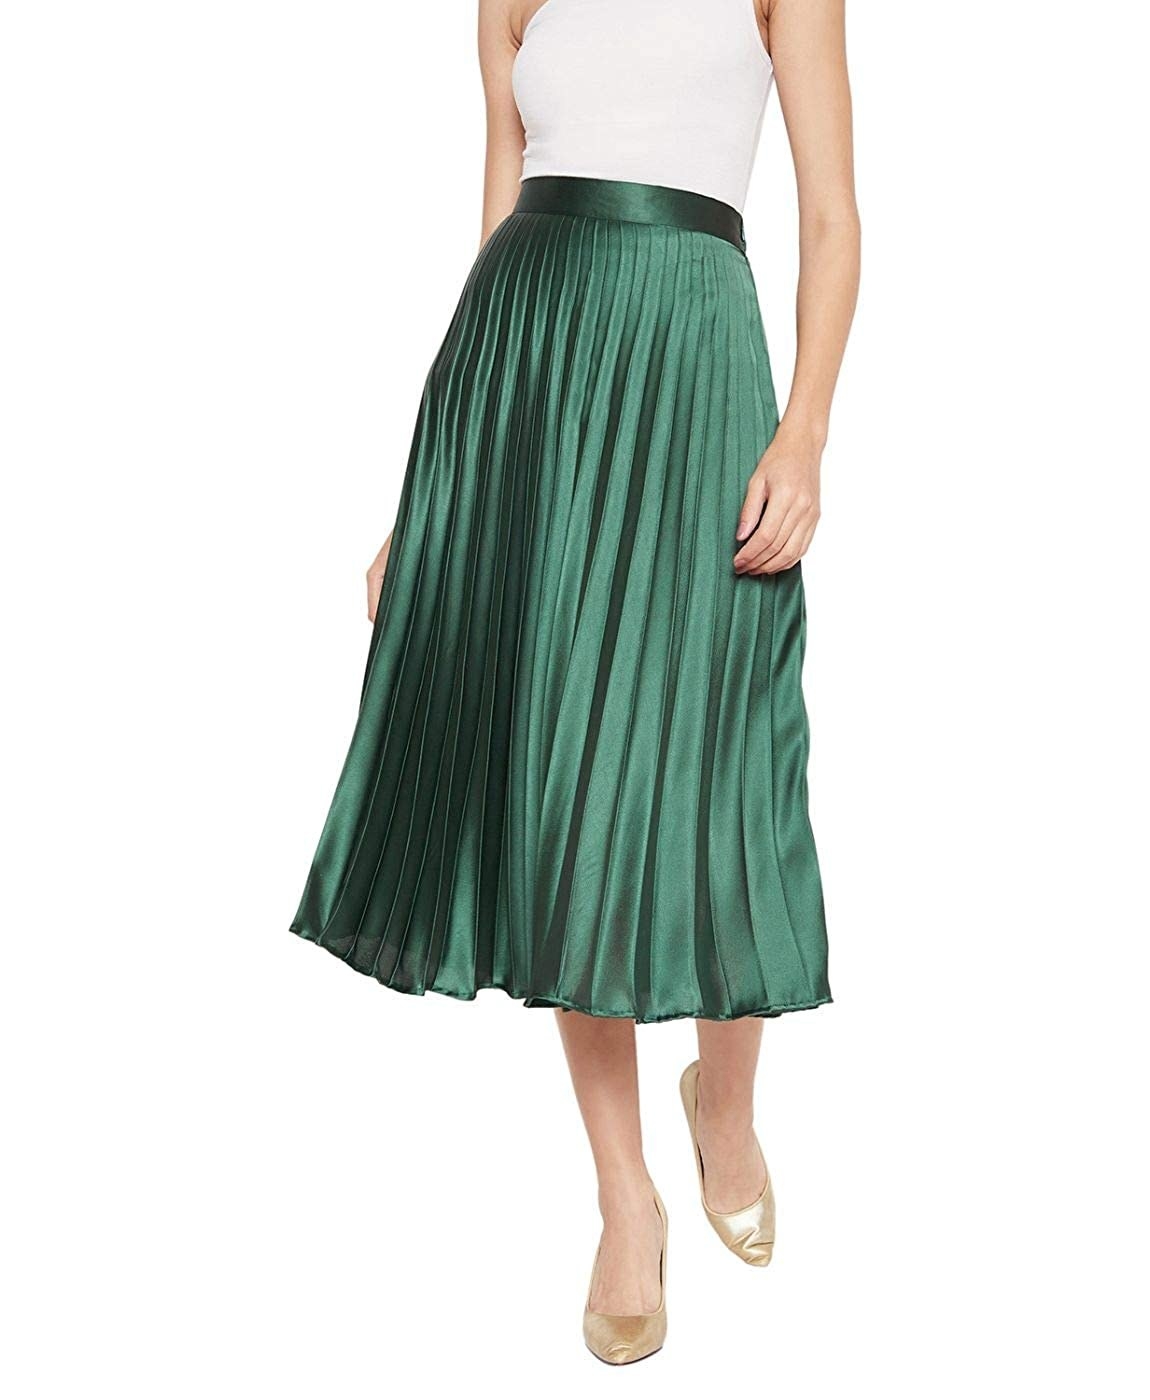 Woman wearing a green metallic midi skirt